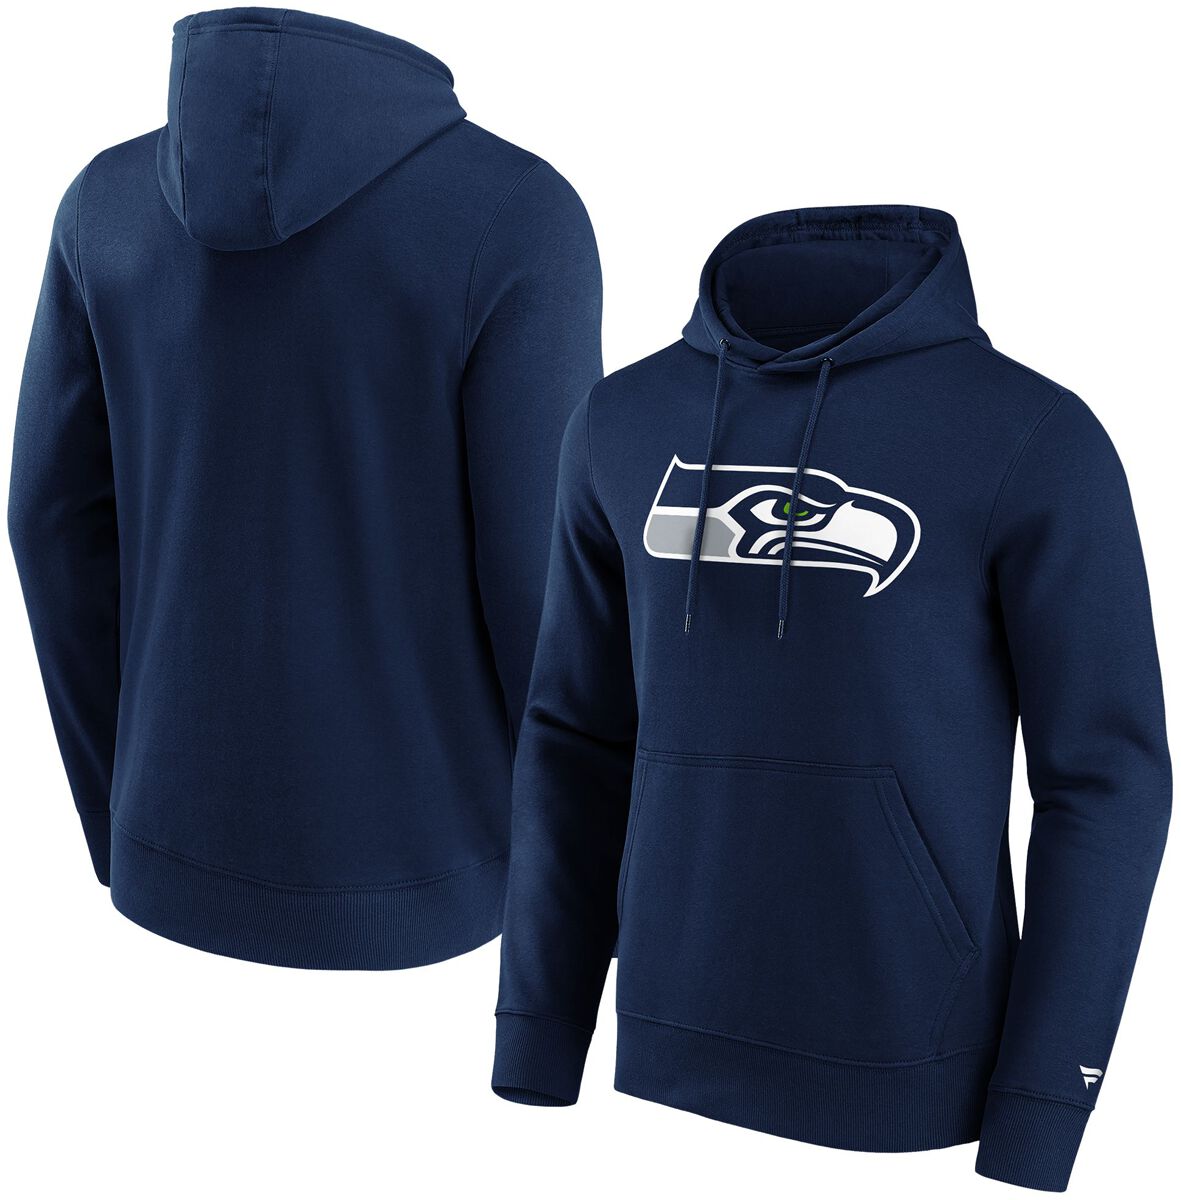 Fanatics Kapuzenpullover - Seattle Seahawks Logo - S bis L - für Männer - Größe L - navy